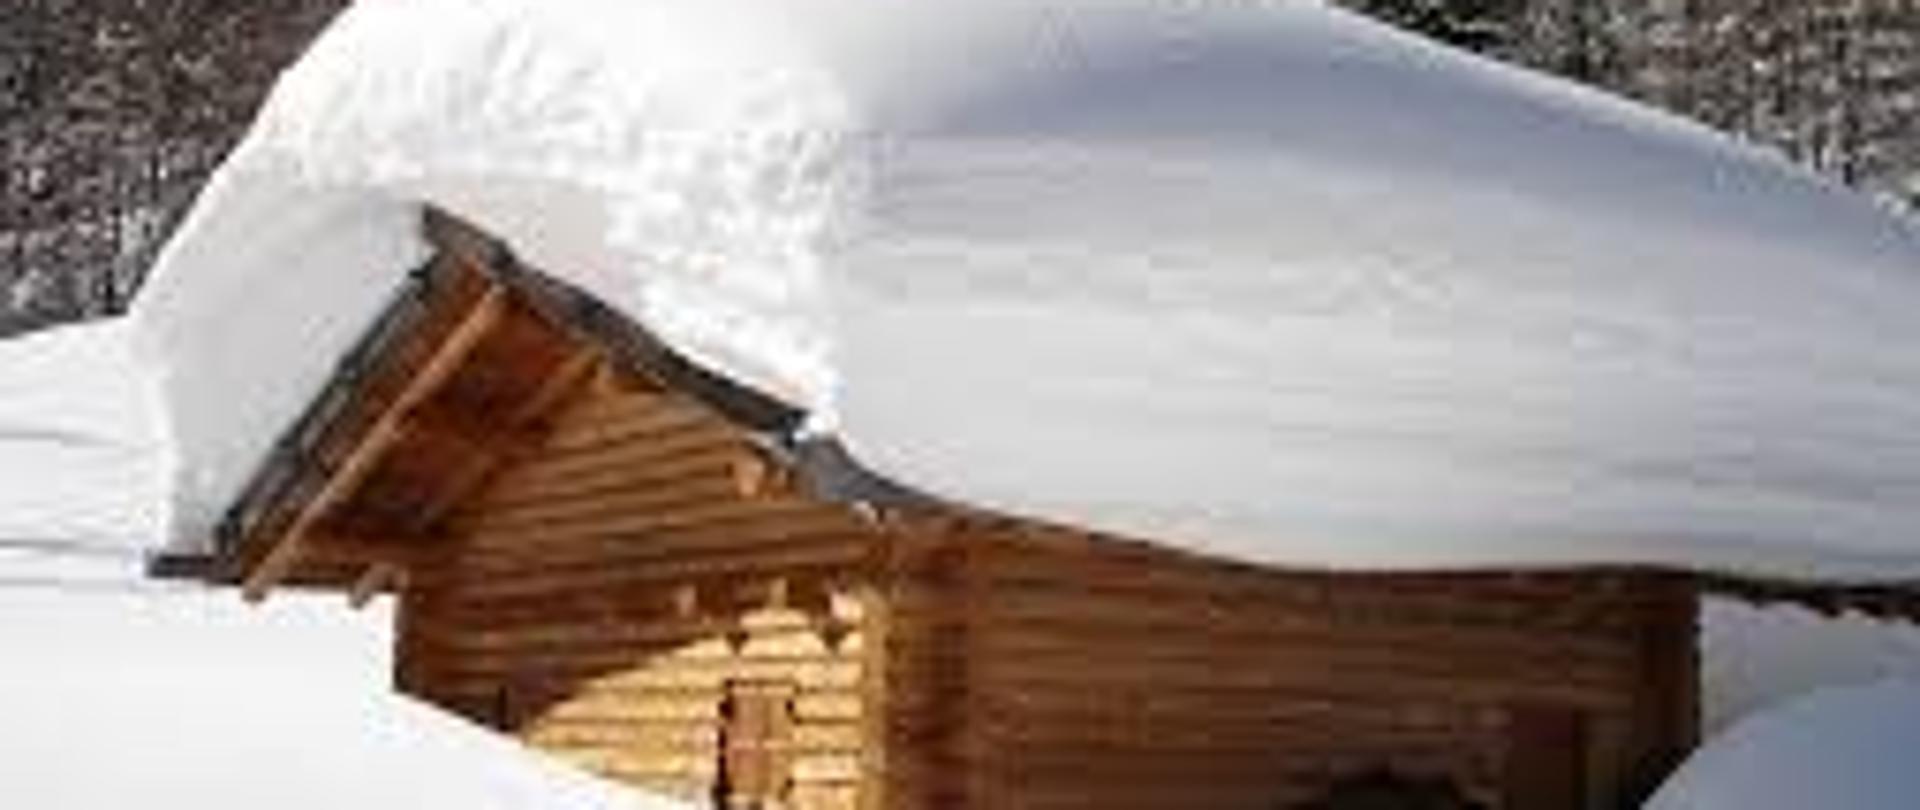 Na zdjęciu znajduje się drewniany domek przysypany dużą ilością śniegu,